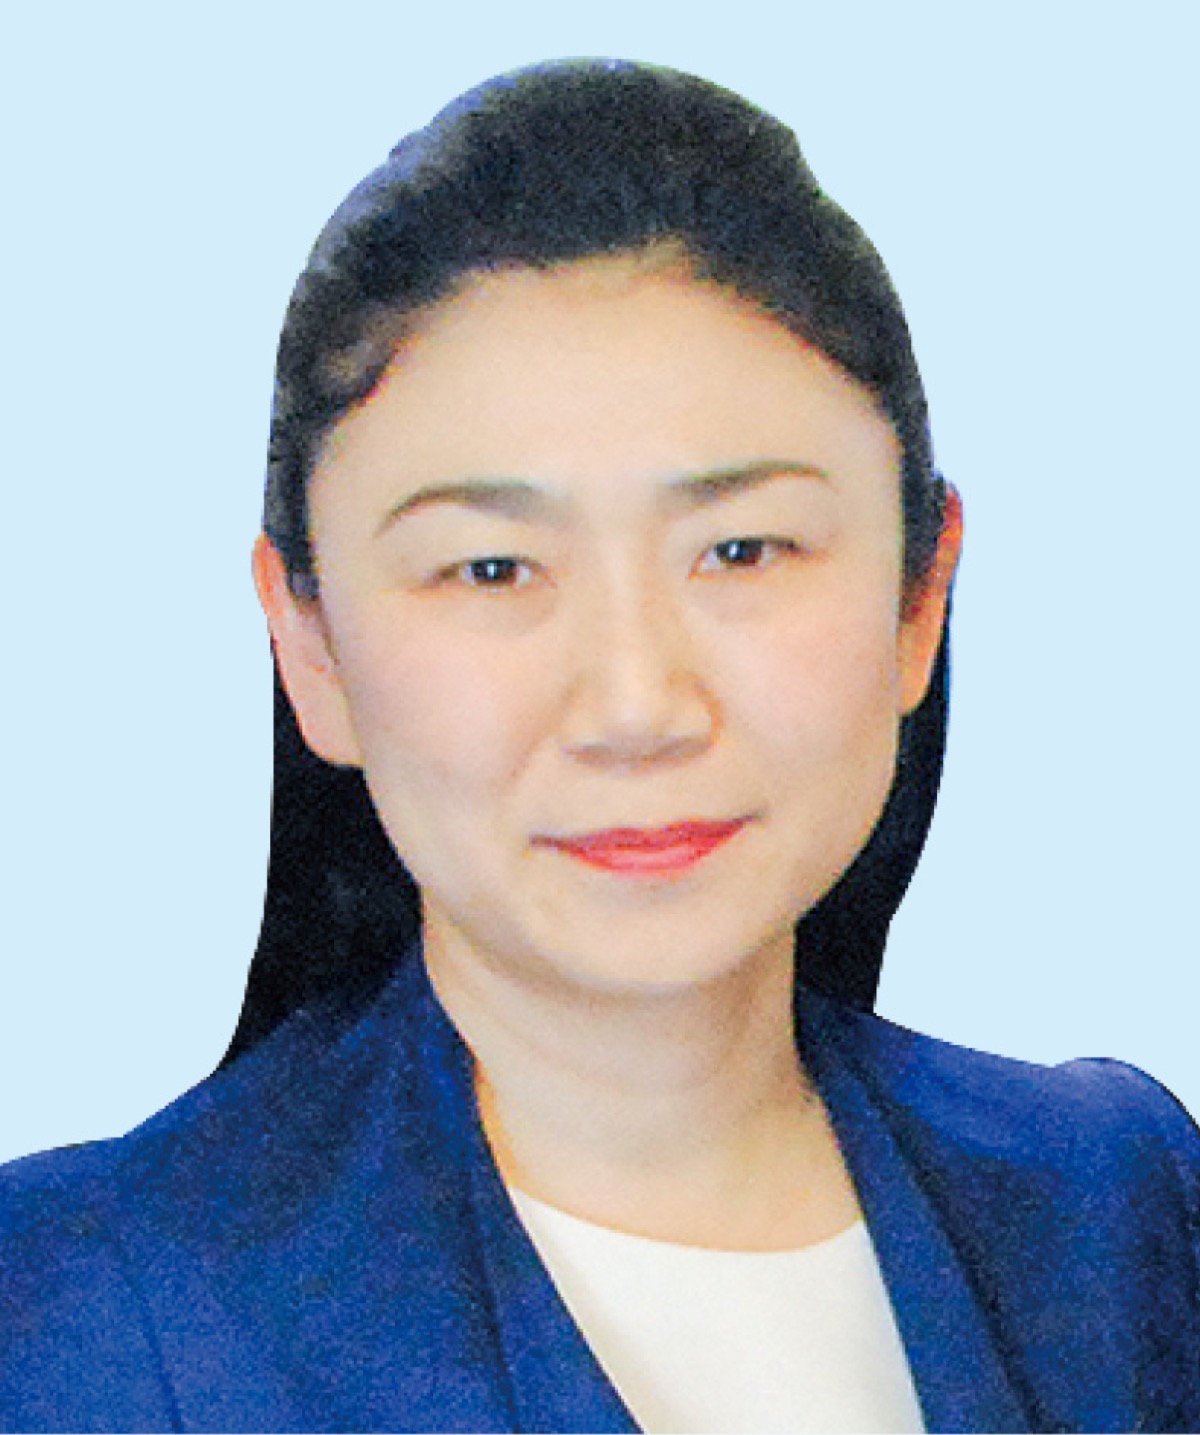 牧島氏、自民党青年局長に 女性で初の就任